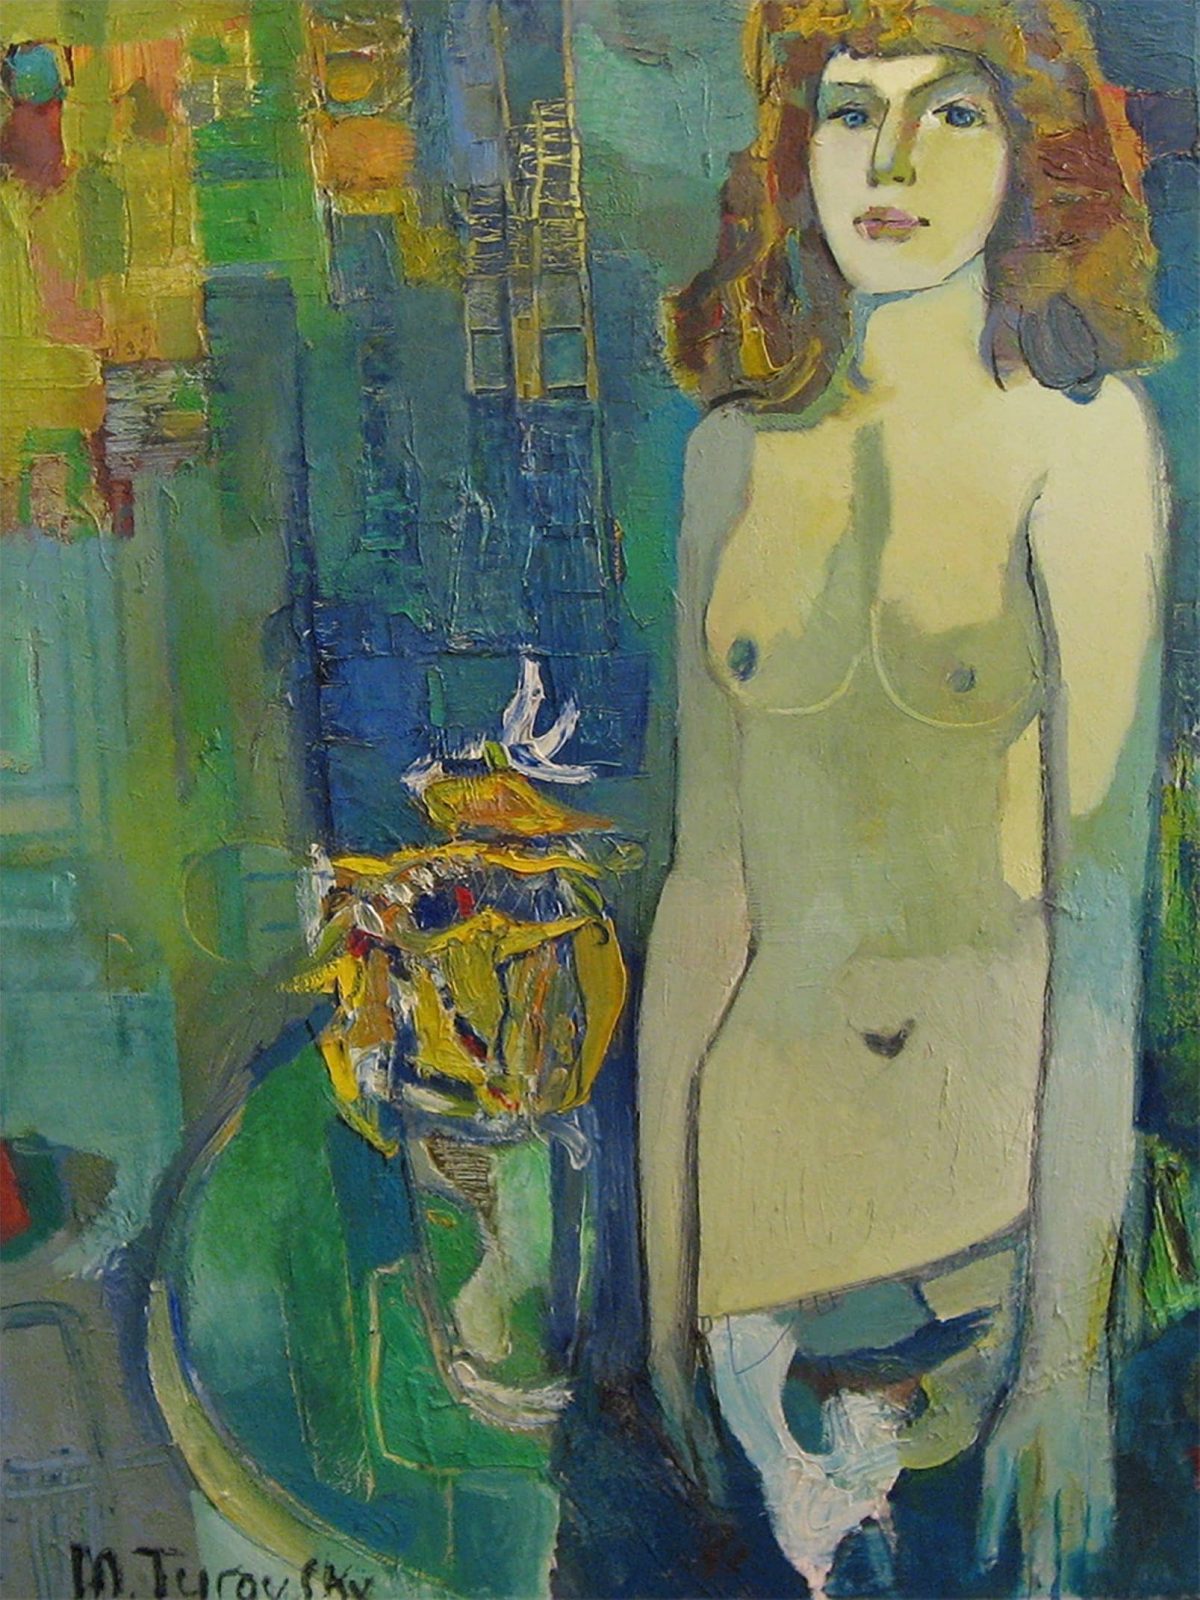 turovsky, girl and bouquet, 120x90, oil/canvas.JPG paintings of Mikhail Turovsky